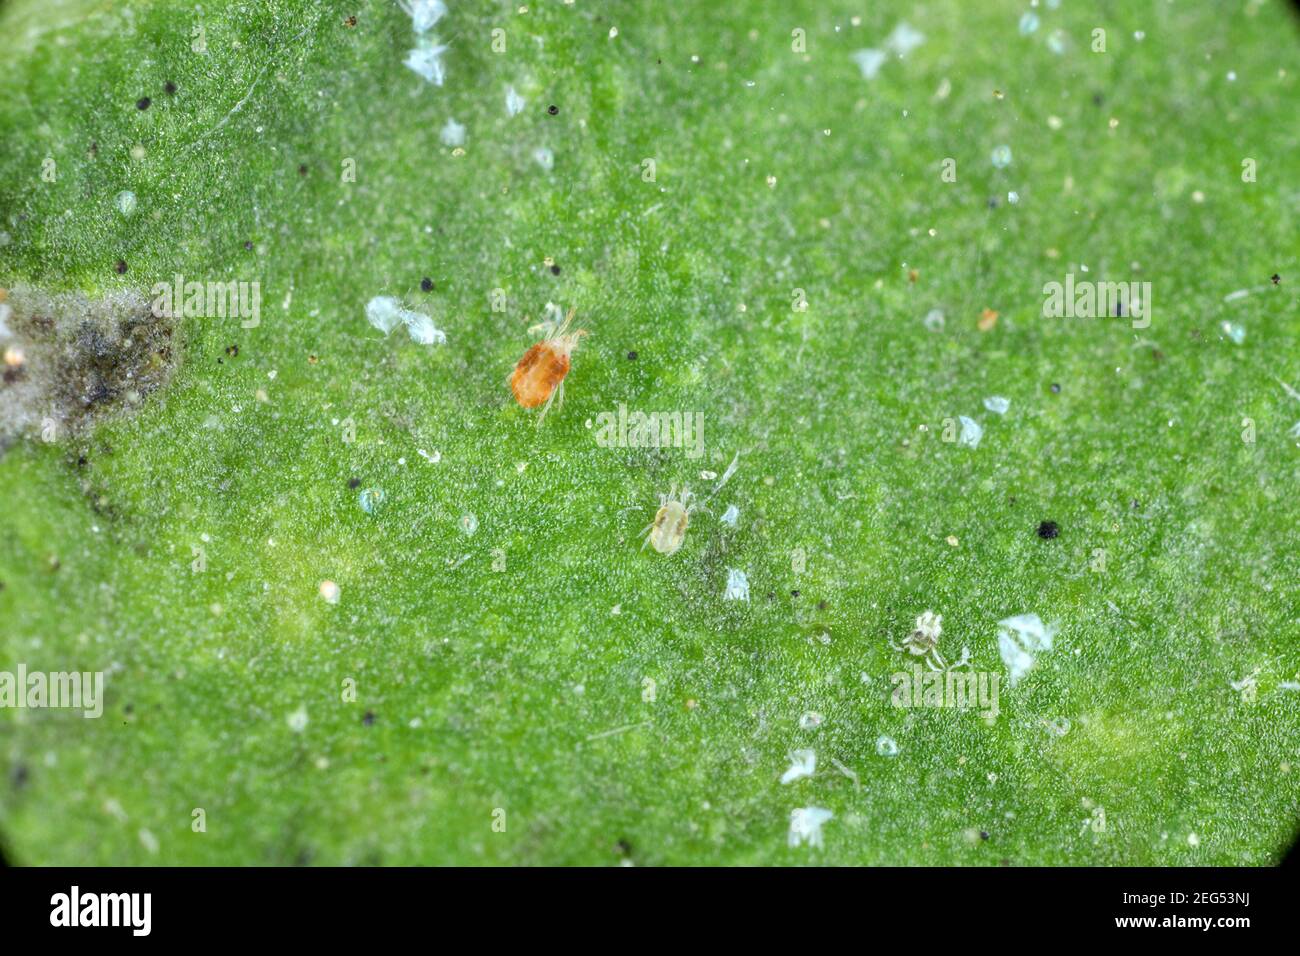 Gros plan d'une masse d'araignées rouges (Tetranychus urticaire) sur la feuille. Exsuviae visible, oeufs, fèces, toiles d'araignée et cellules végétales endommagées. Banque D'Images